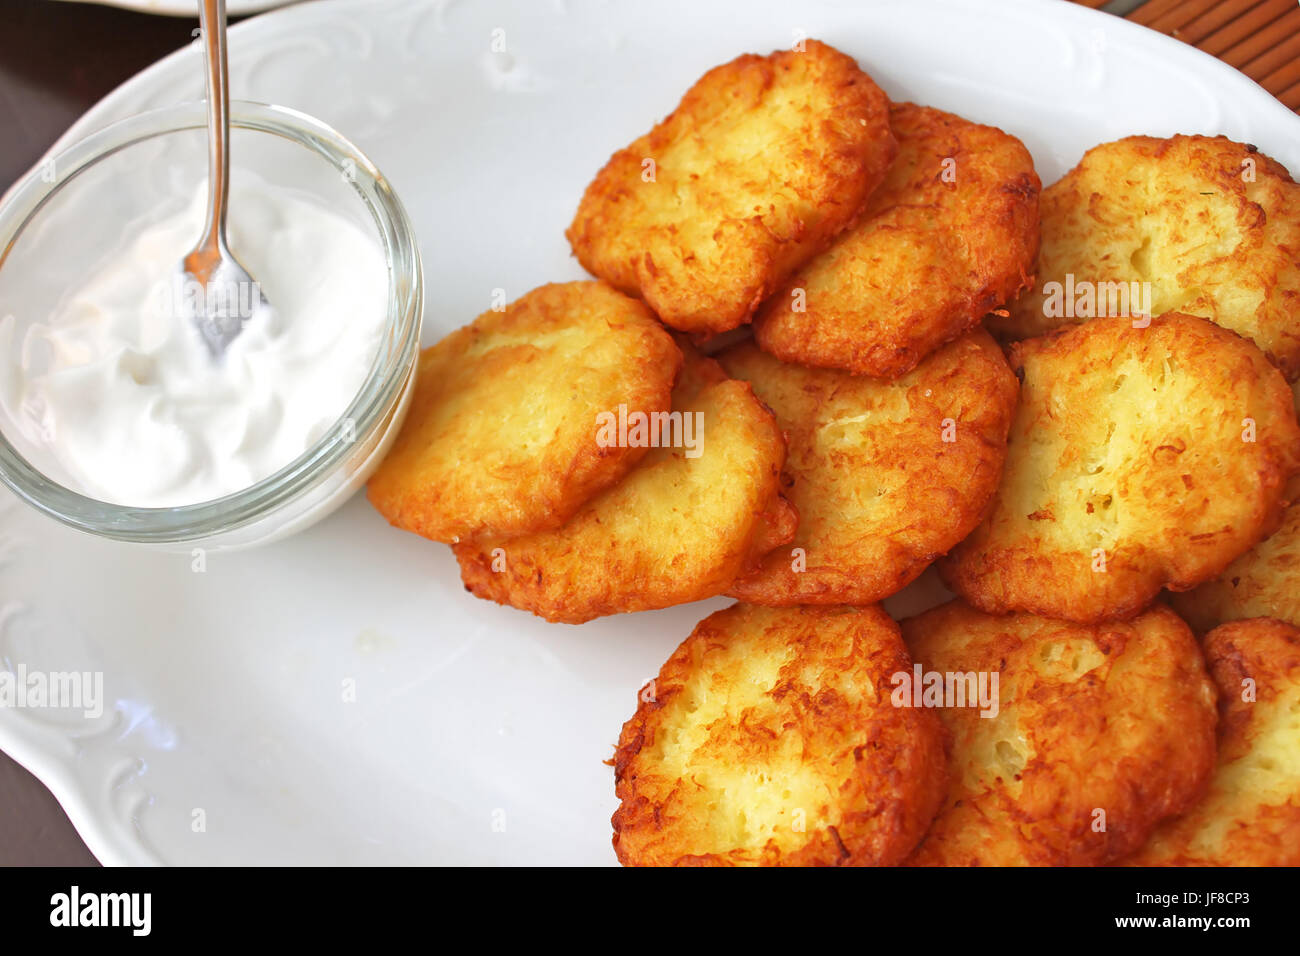 Tasty potato pancakes with sauce on white plate, closeup Stock Photo